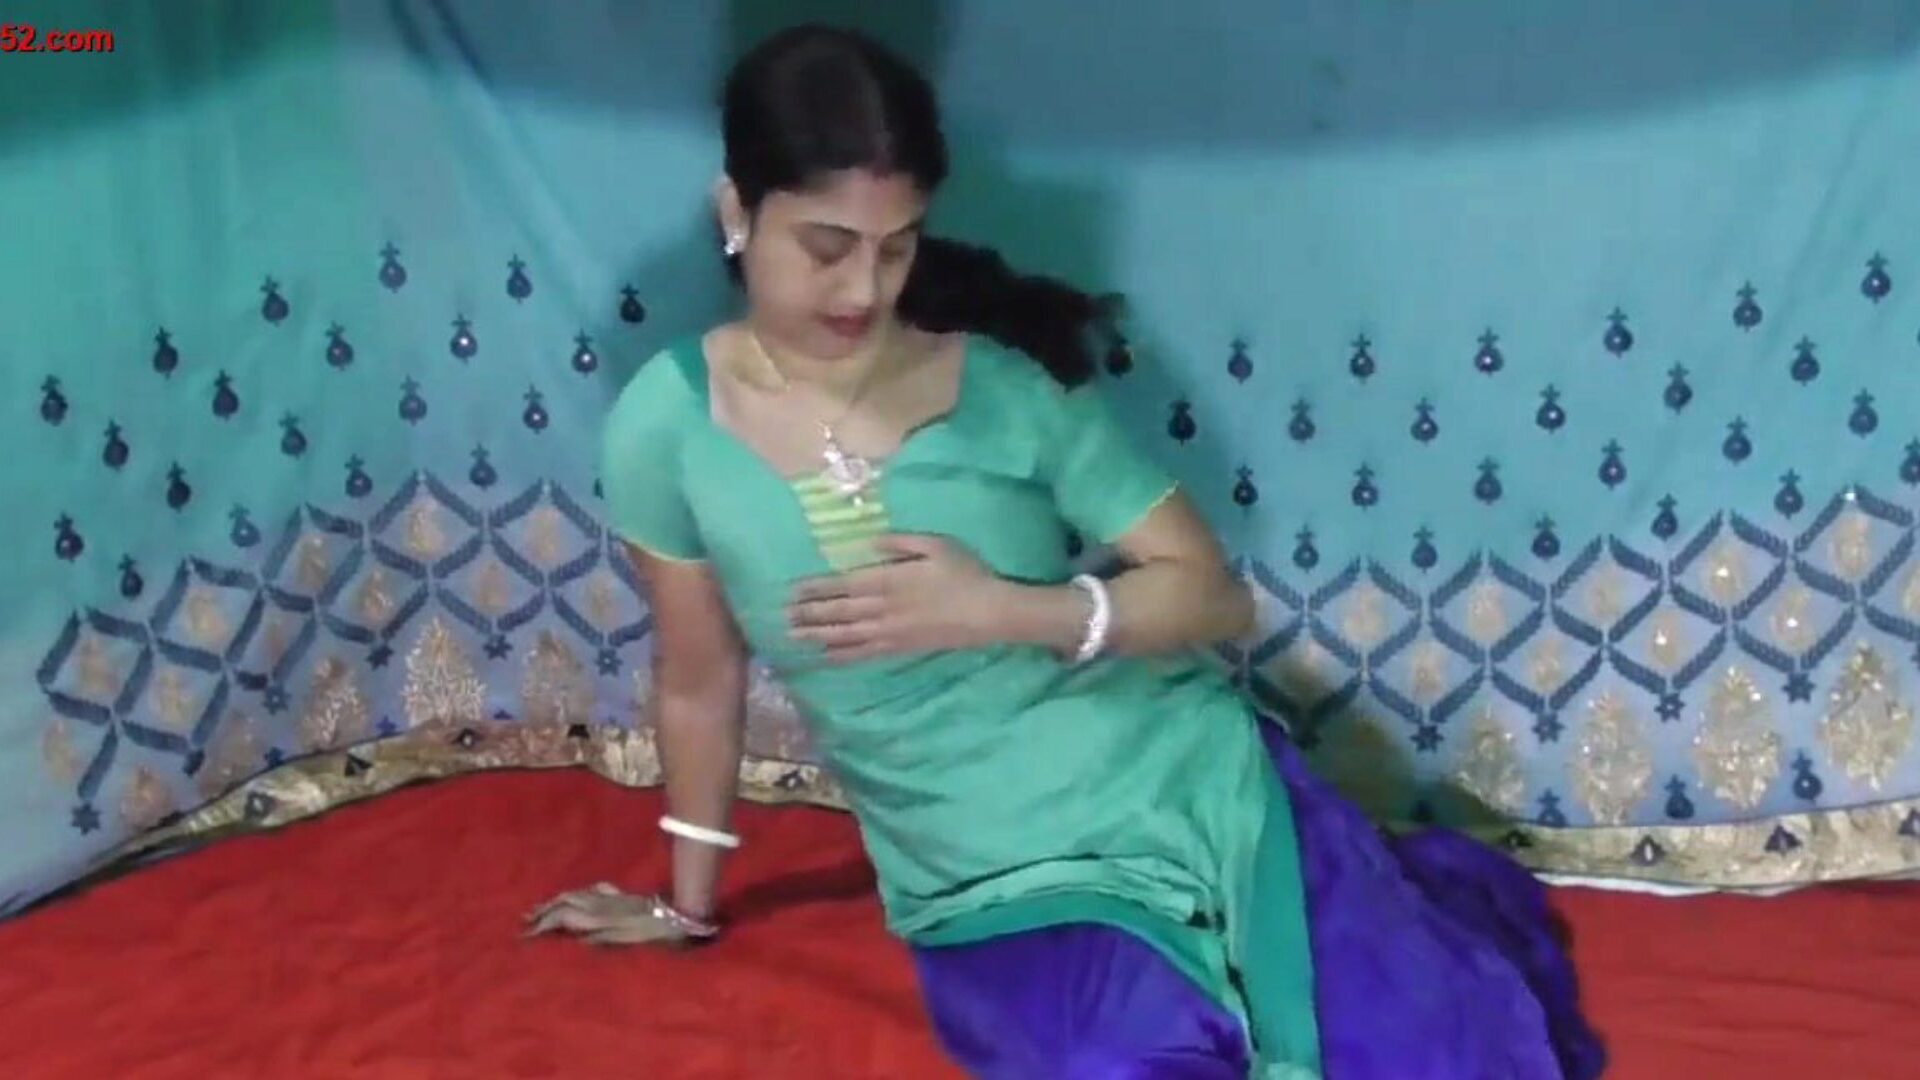 חמוד n כפר סקסי נשים הודיות דפוק מול מצלמת צפה חמוד n סקסי כפר נשים הודיות דפוק מול מצלמת סרט על xhamster